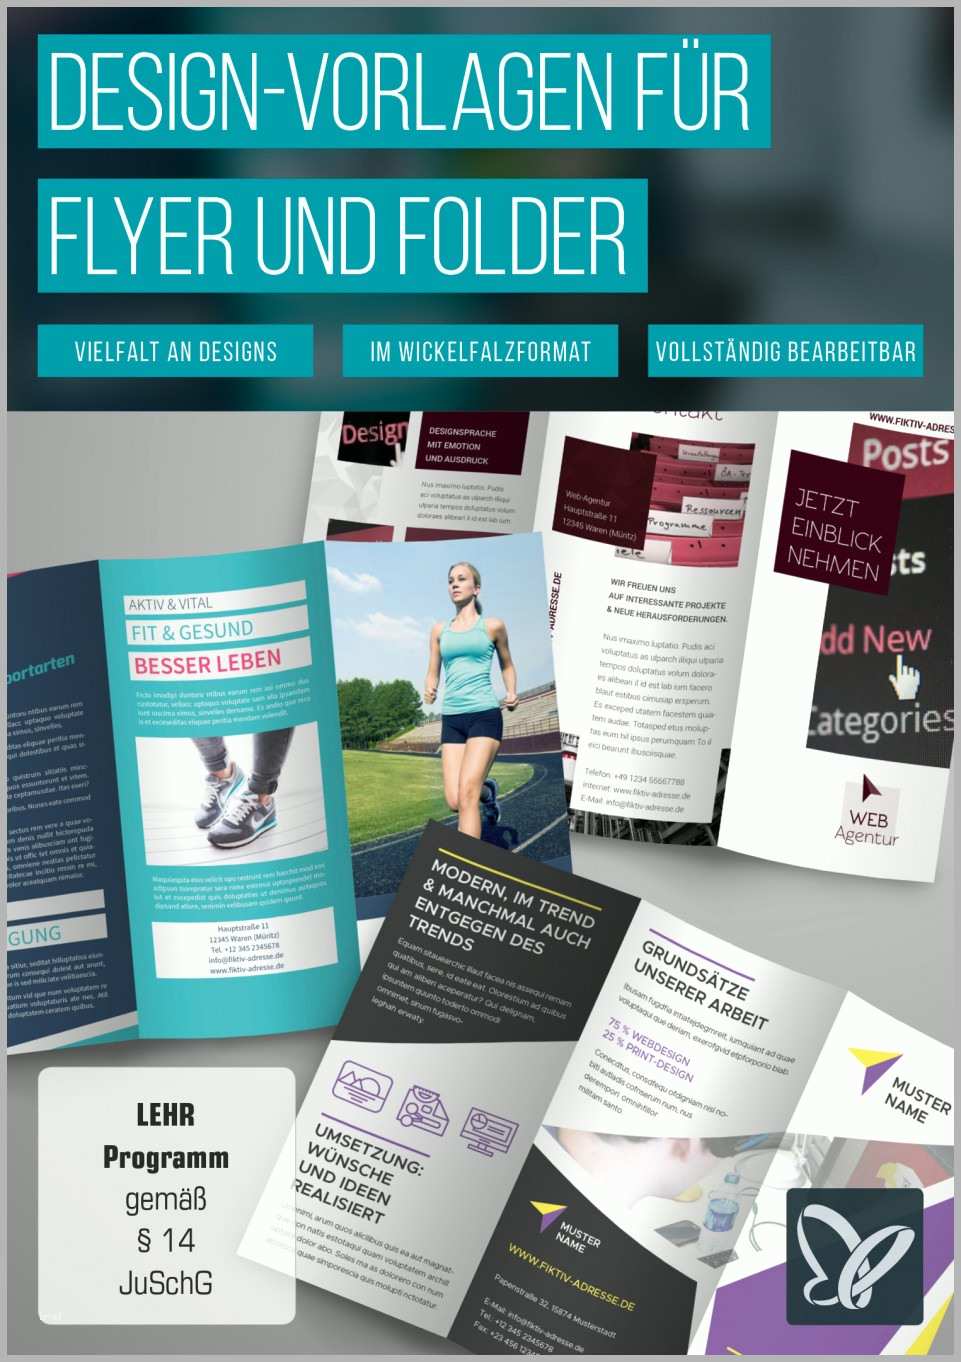 Bemerkenswert Flyer Und Folder Gestalten – Fertige Design Vorlagen